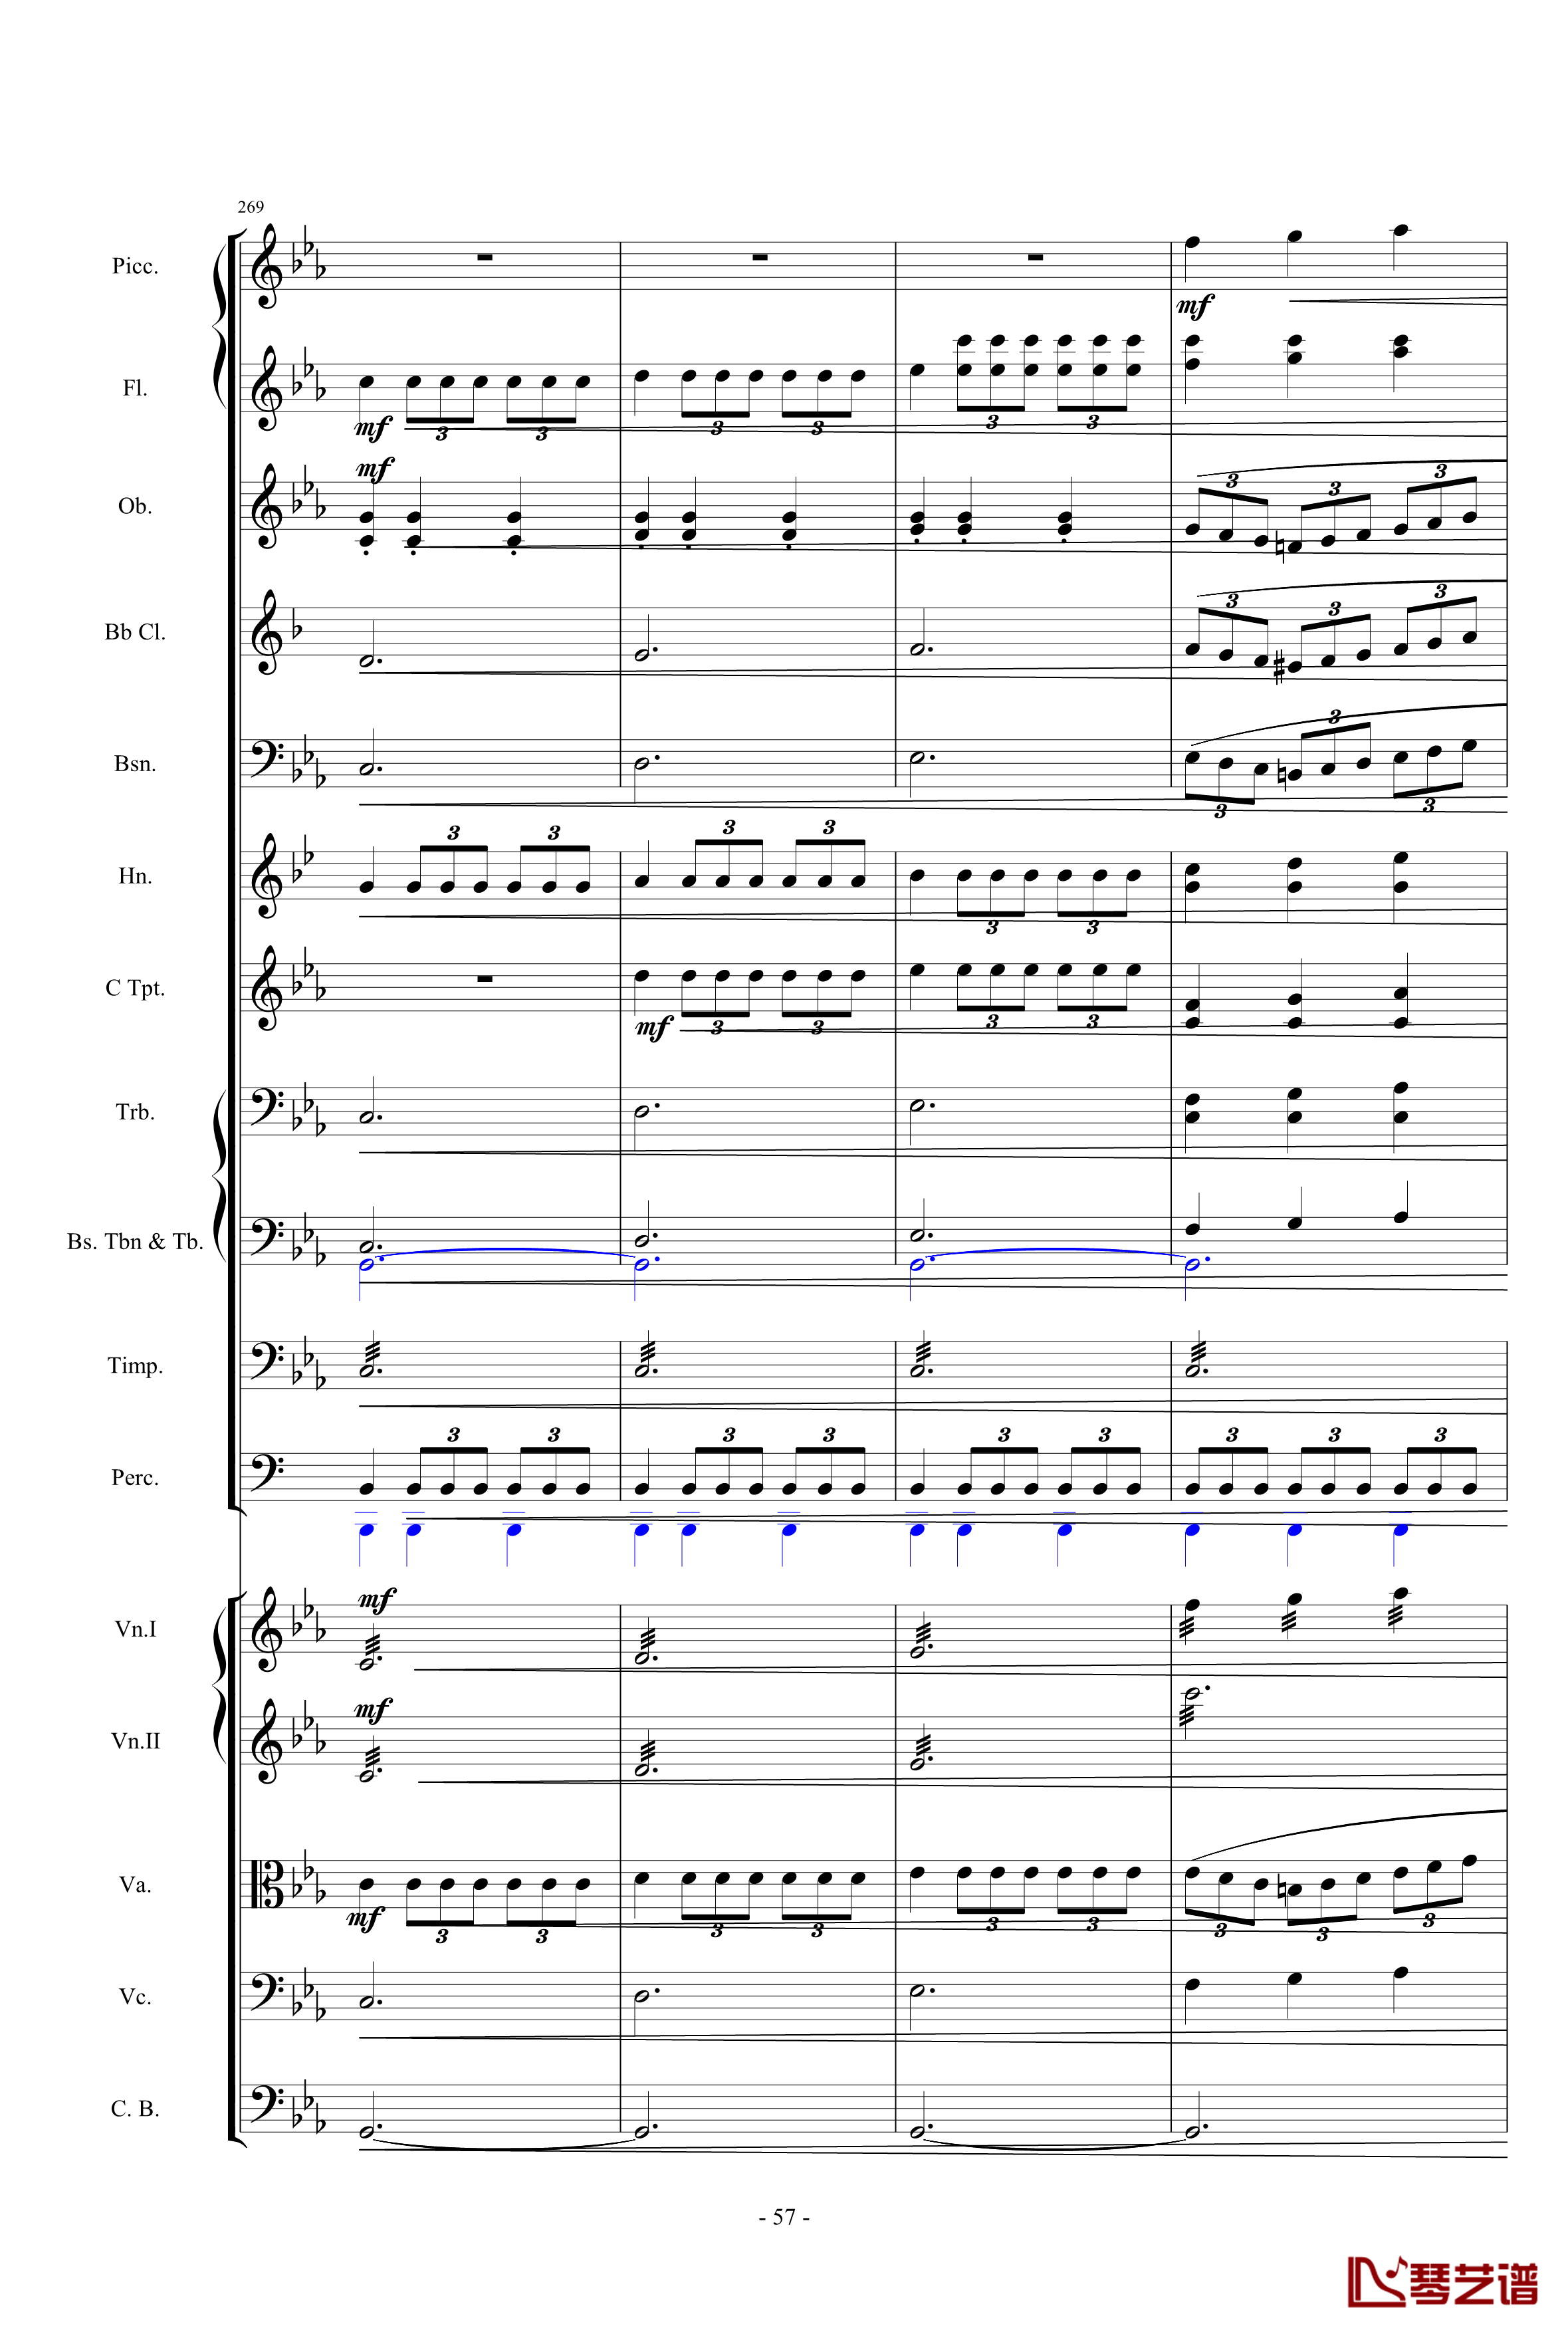 愤怒的小鸟交响曲第三乐章Op.5 no.3钢琴谱-1057257857